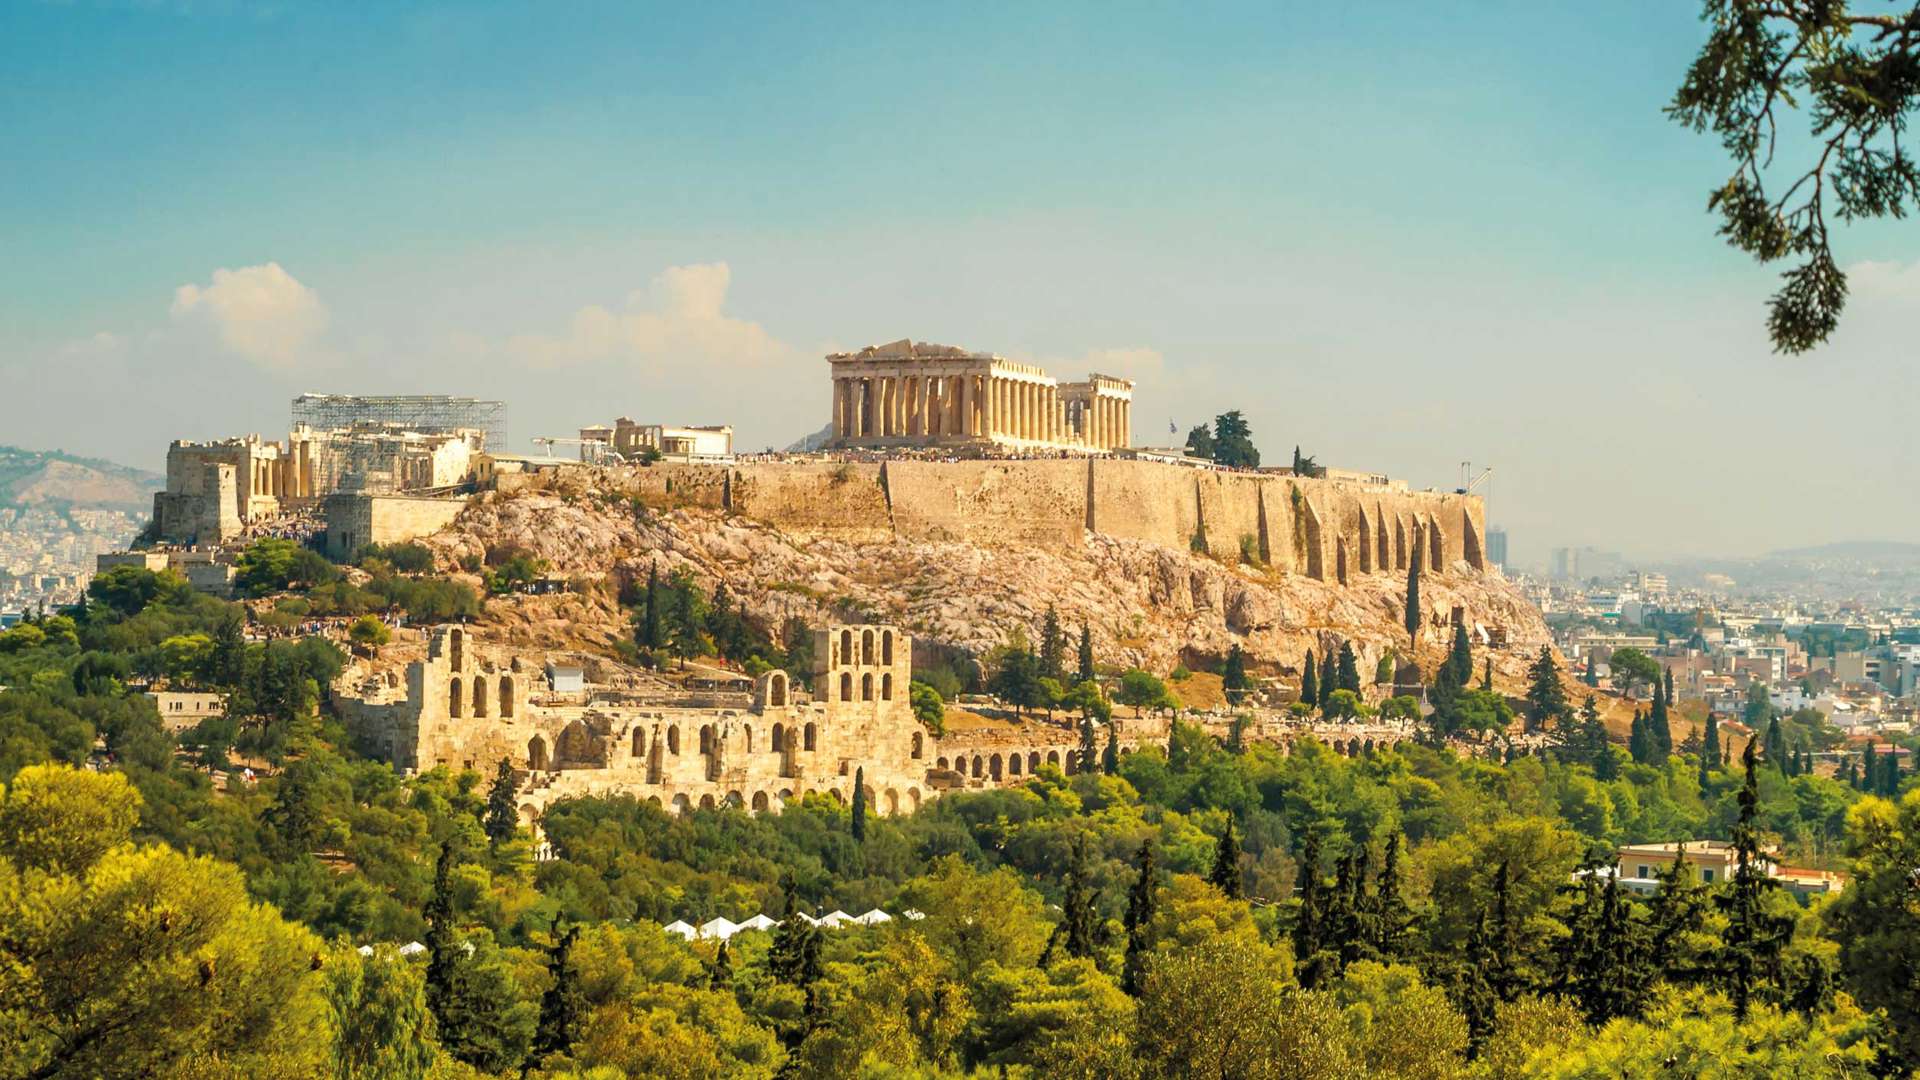 Acropolis Of Athens, Greece